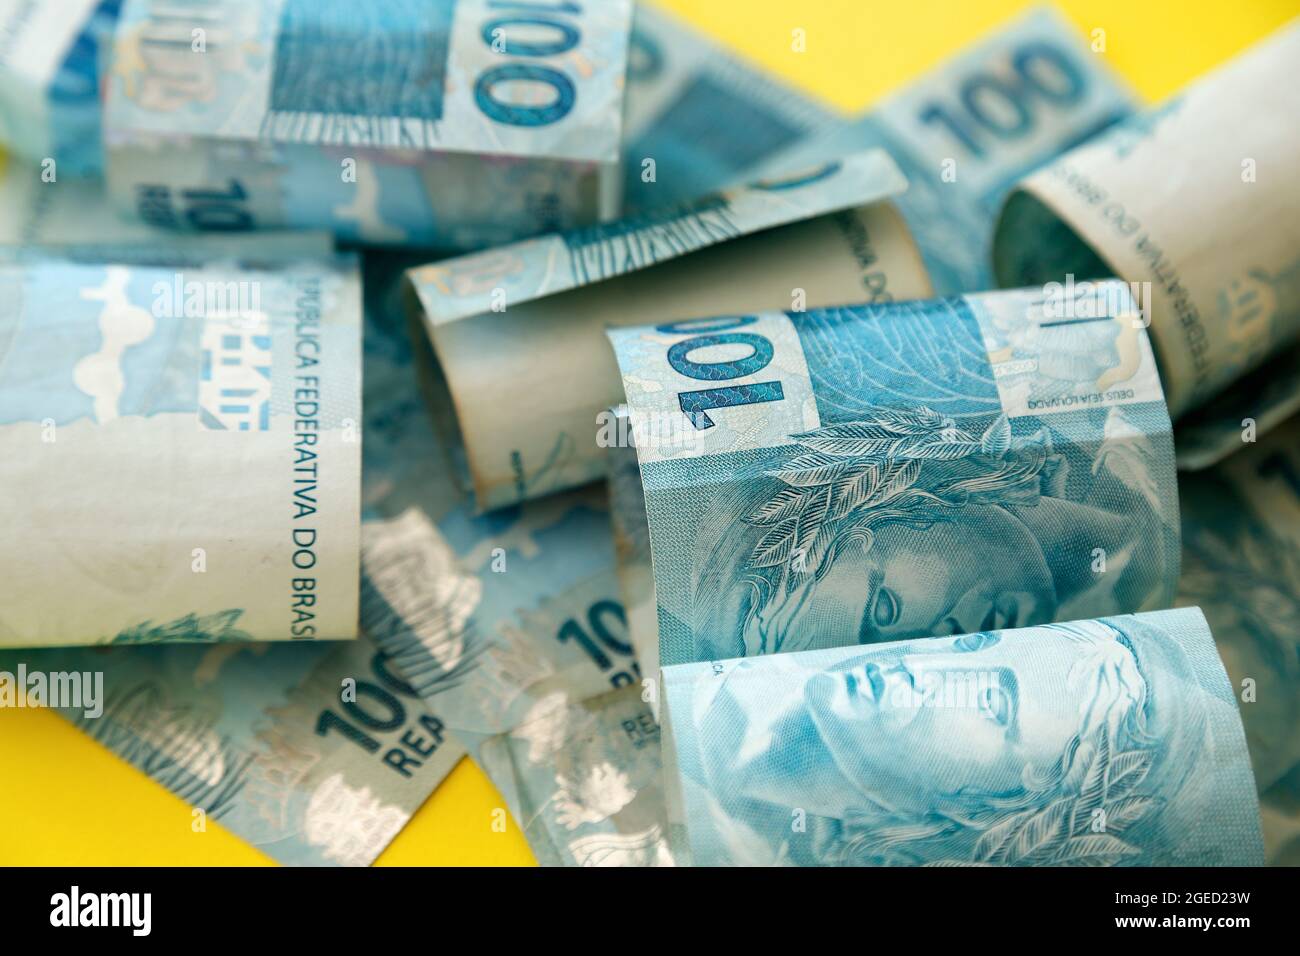 L'argent du Brésil s'est accumulé - détail en centaines de reais de billets étalés à la surface Banque D'Images